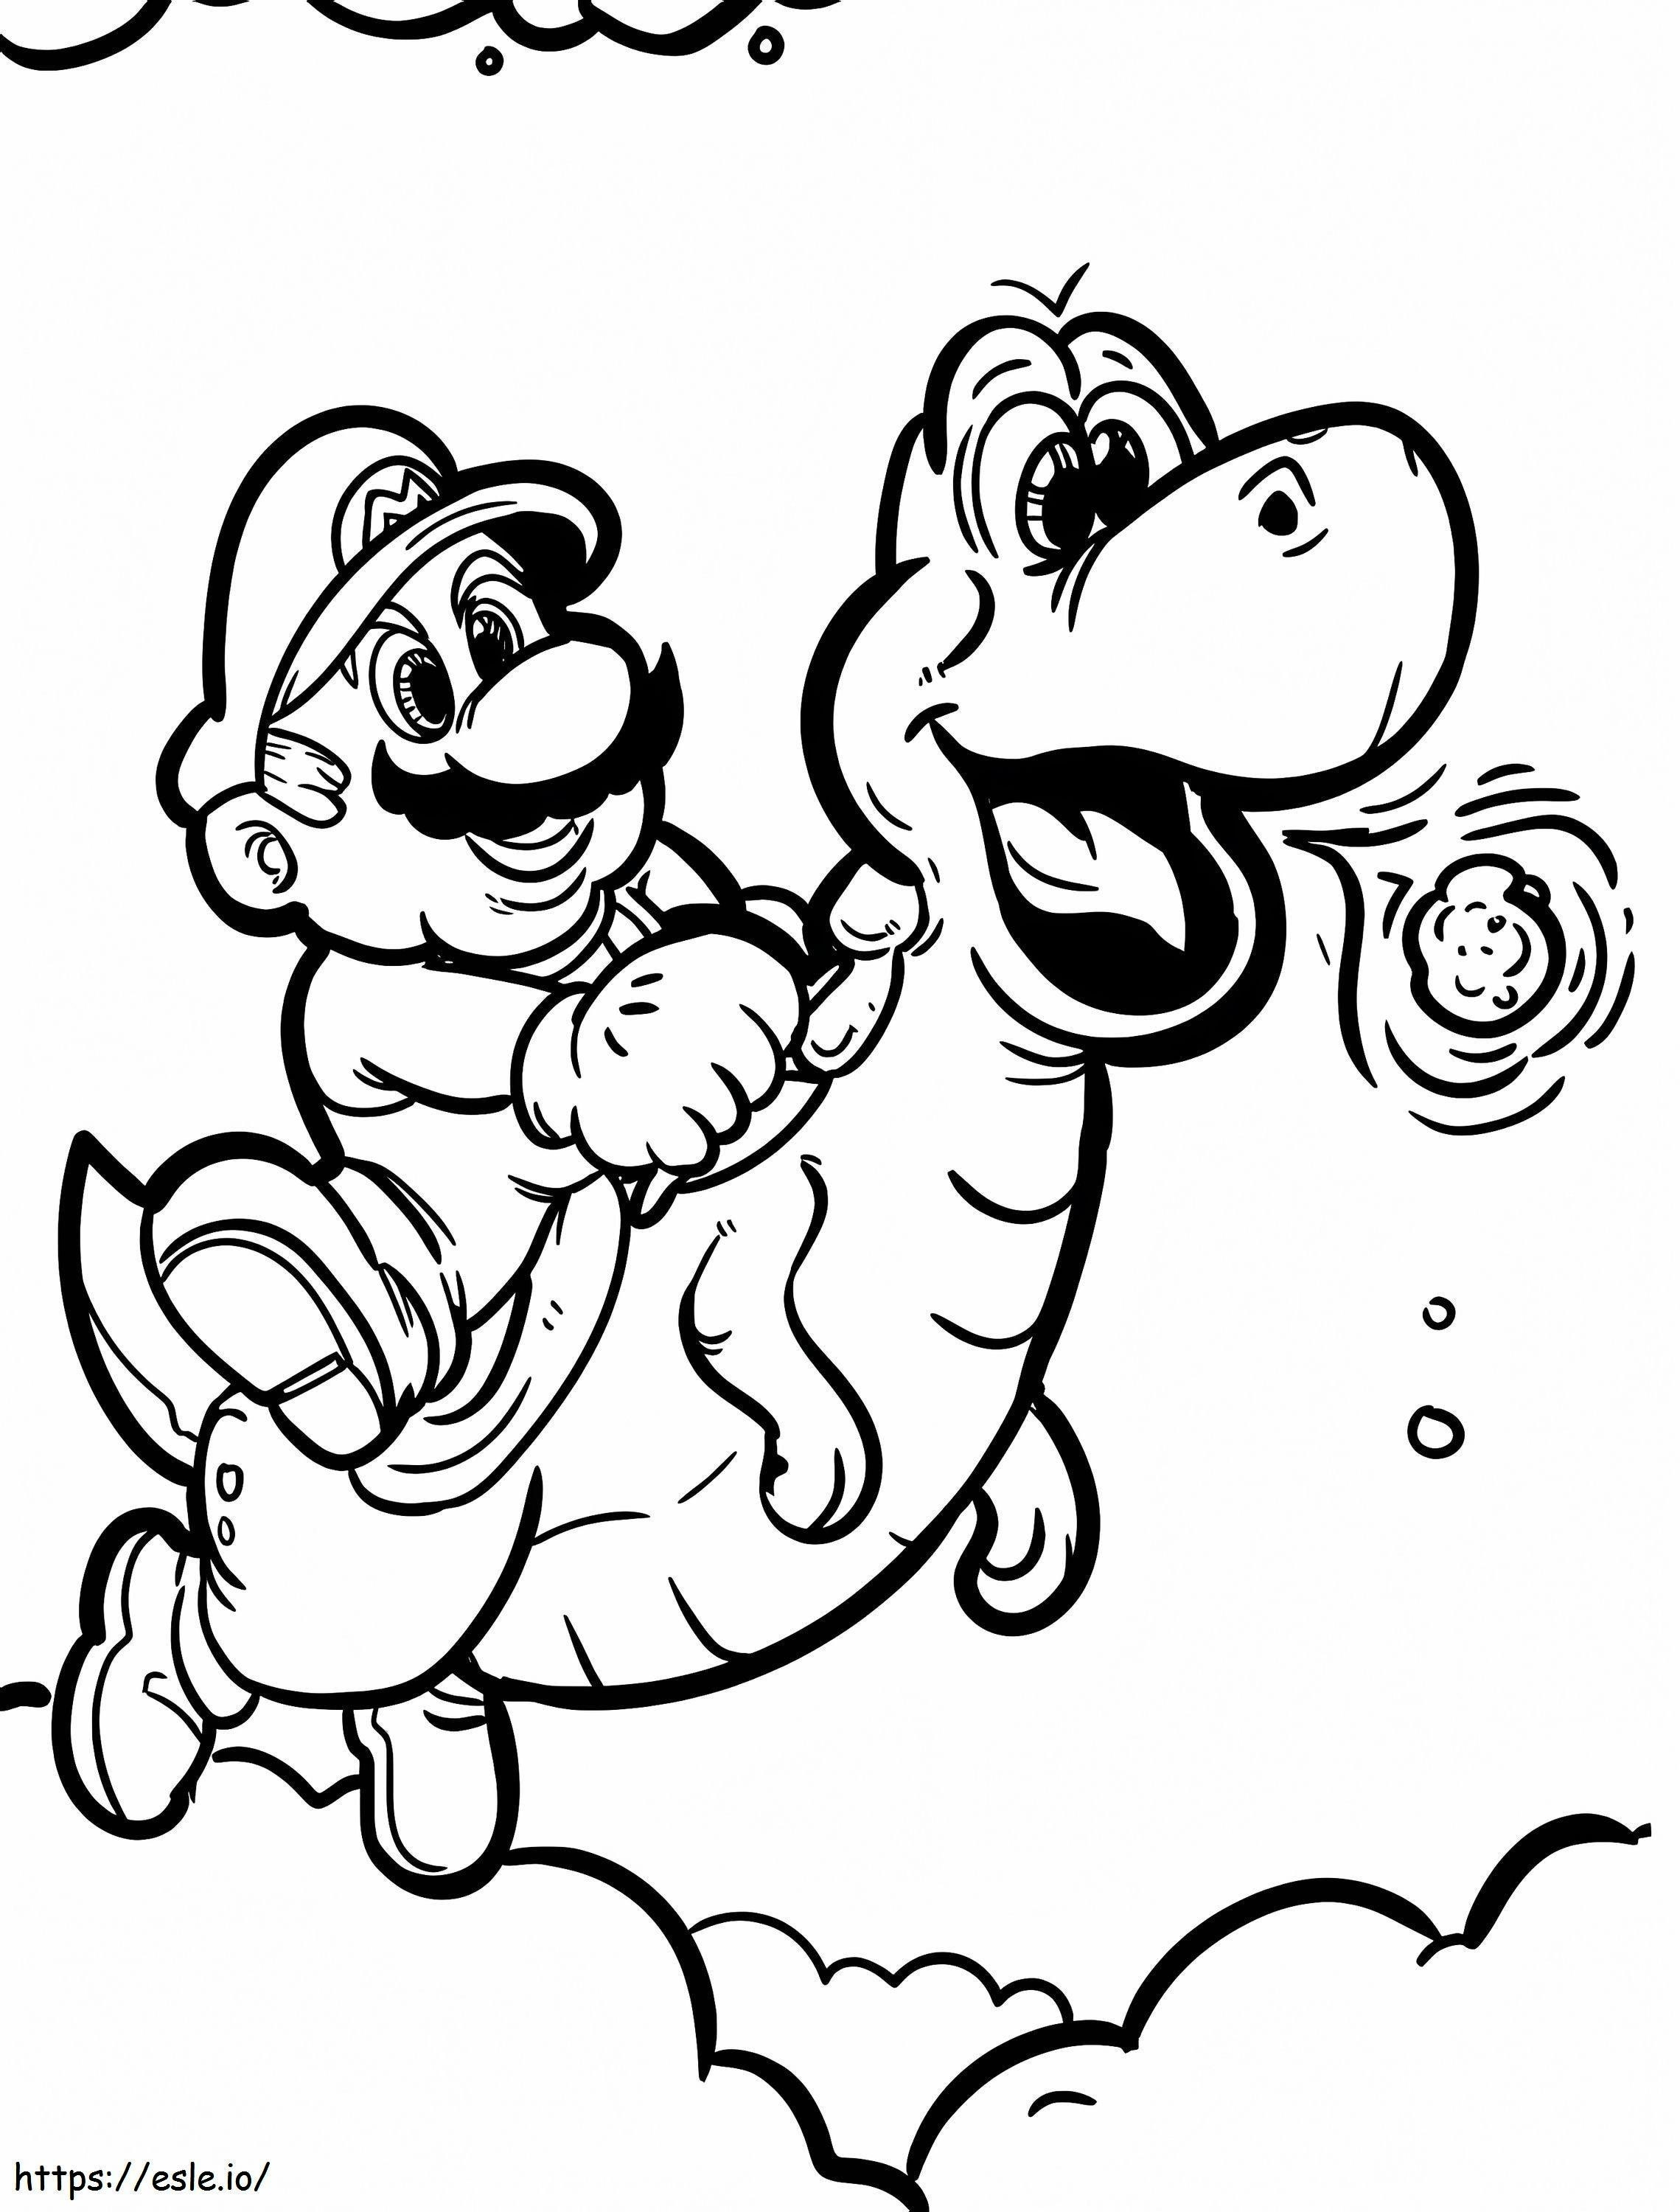 Latający Yoshi i Super Mario kolorowanka